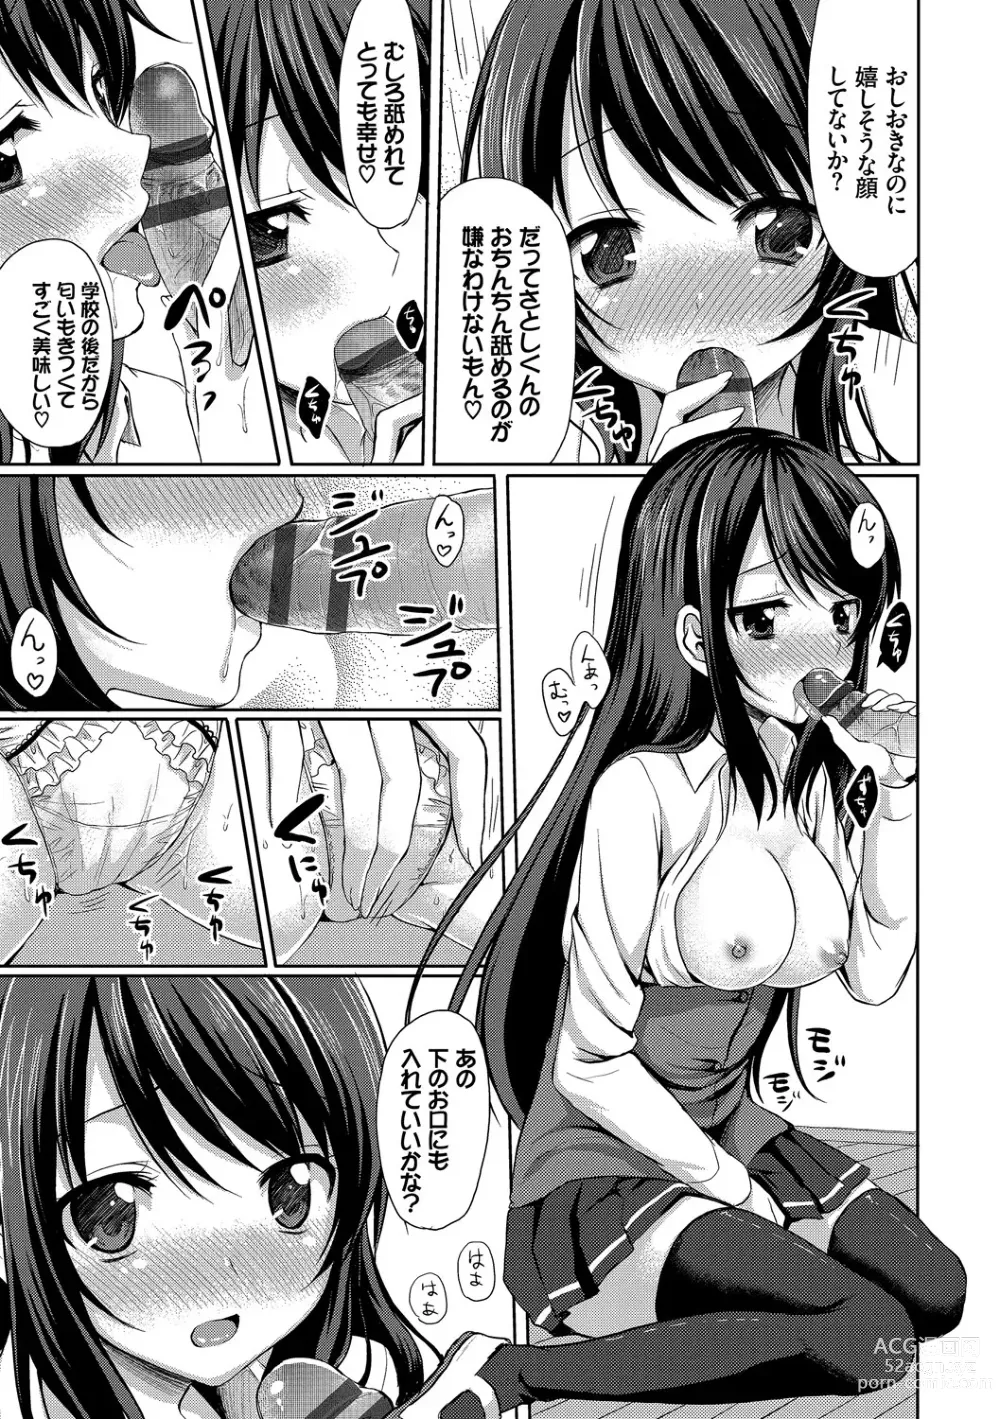 Page 15 of manga Merokyun ~Suki no Jikan~